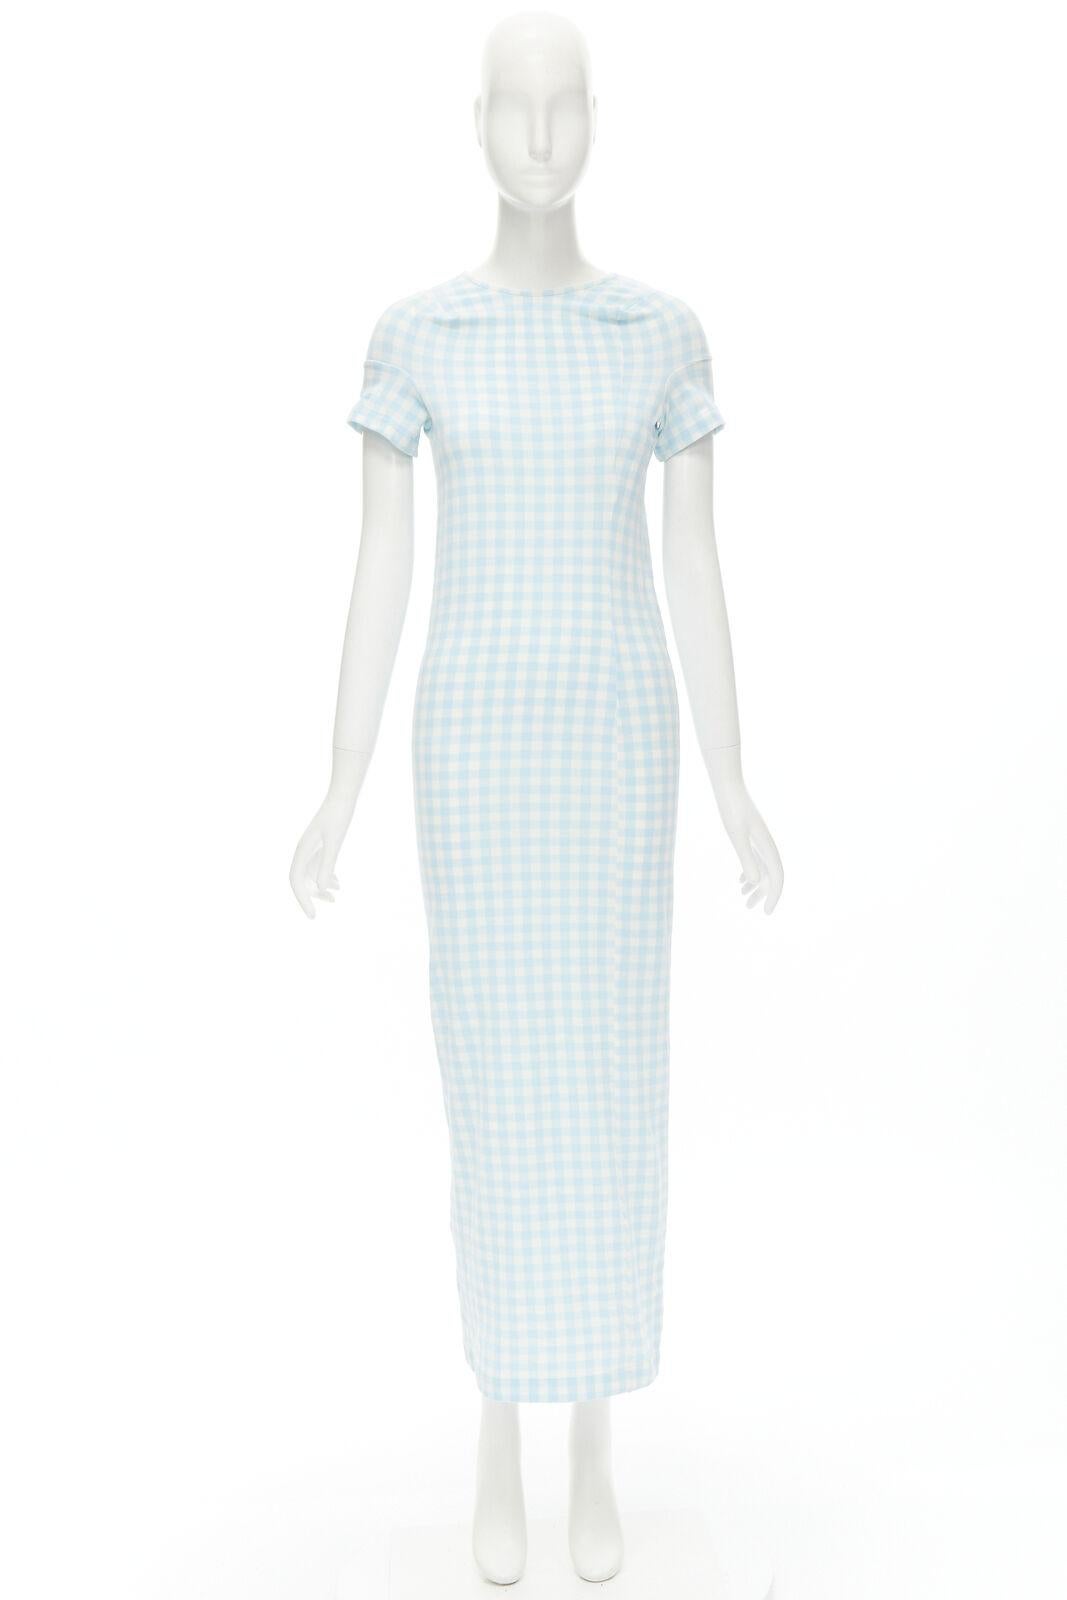 rare COMME DES GARCONS Robe De Chambre Vintage 1997 Lumps Bumps light blue dress For Sale 4